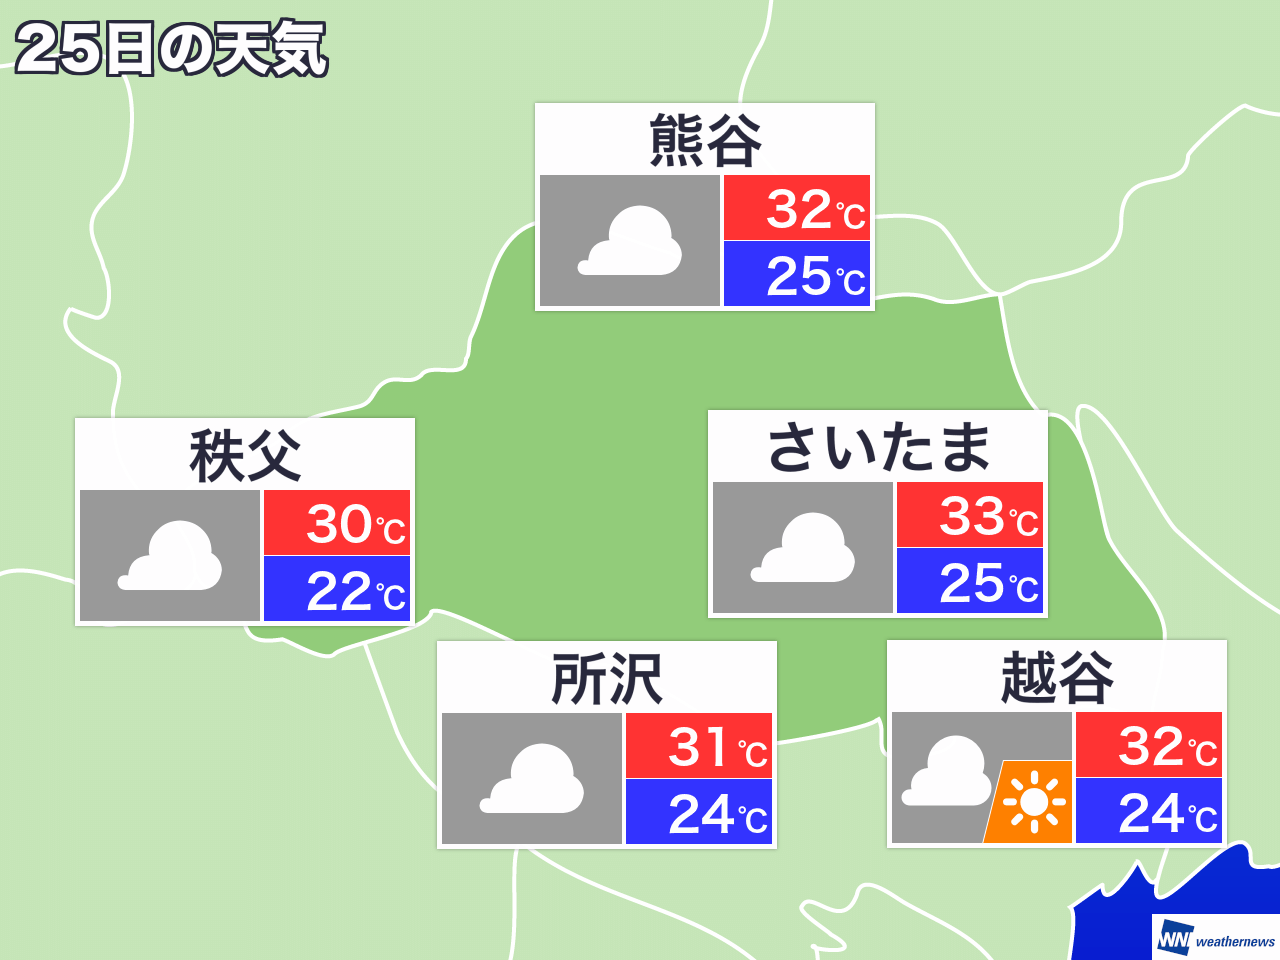 6月17日 月 埼玉県の今日の天気 ウェザーニュース